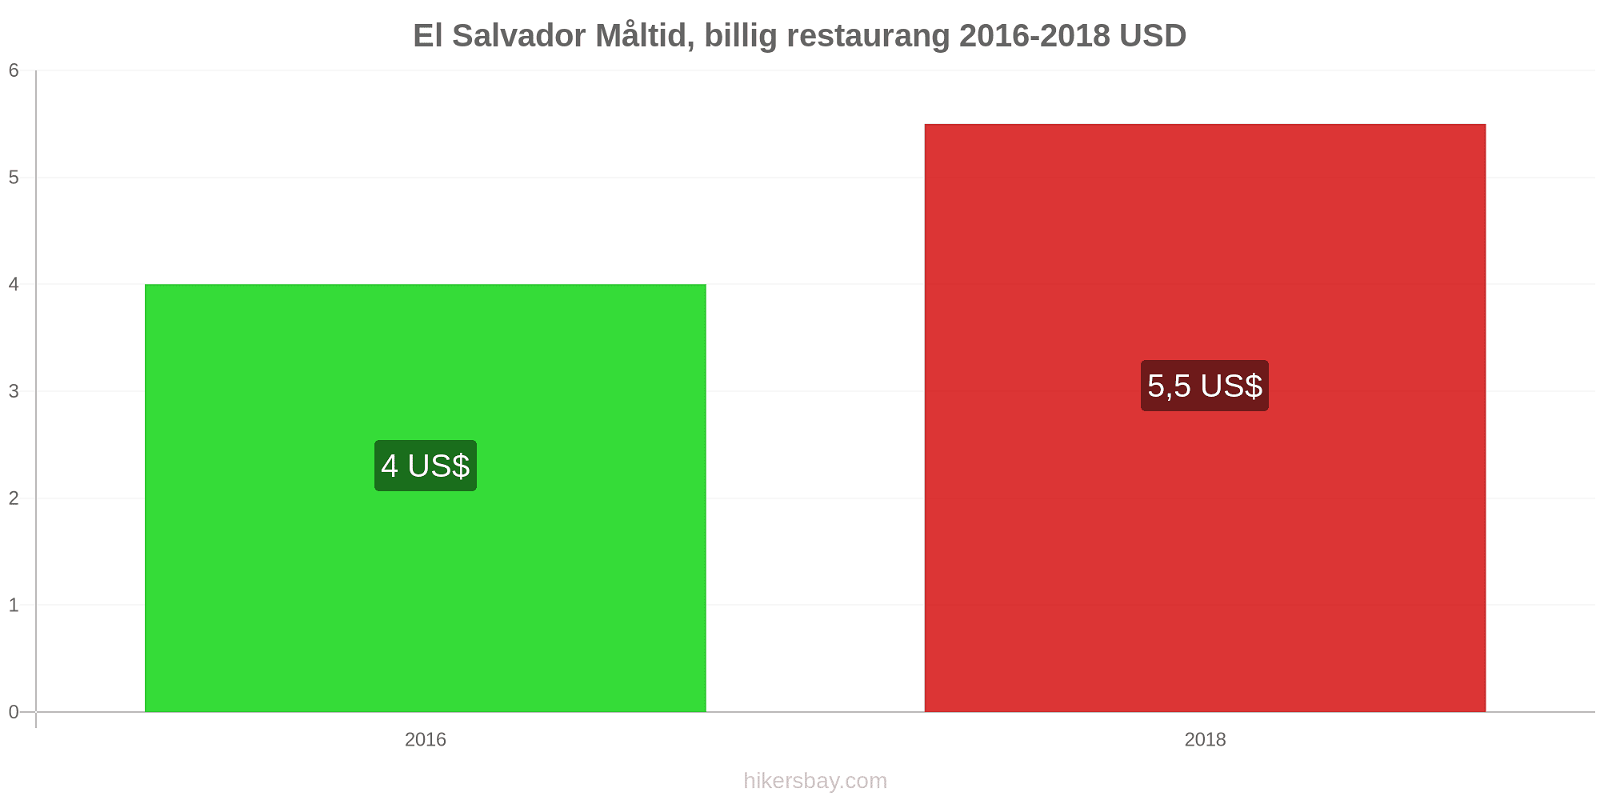 El Salvador prisändringar Måltid i en billig restaurang hikersbay.com